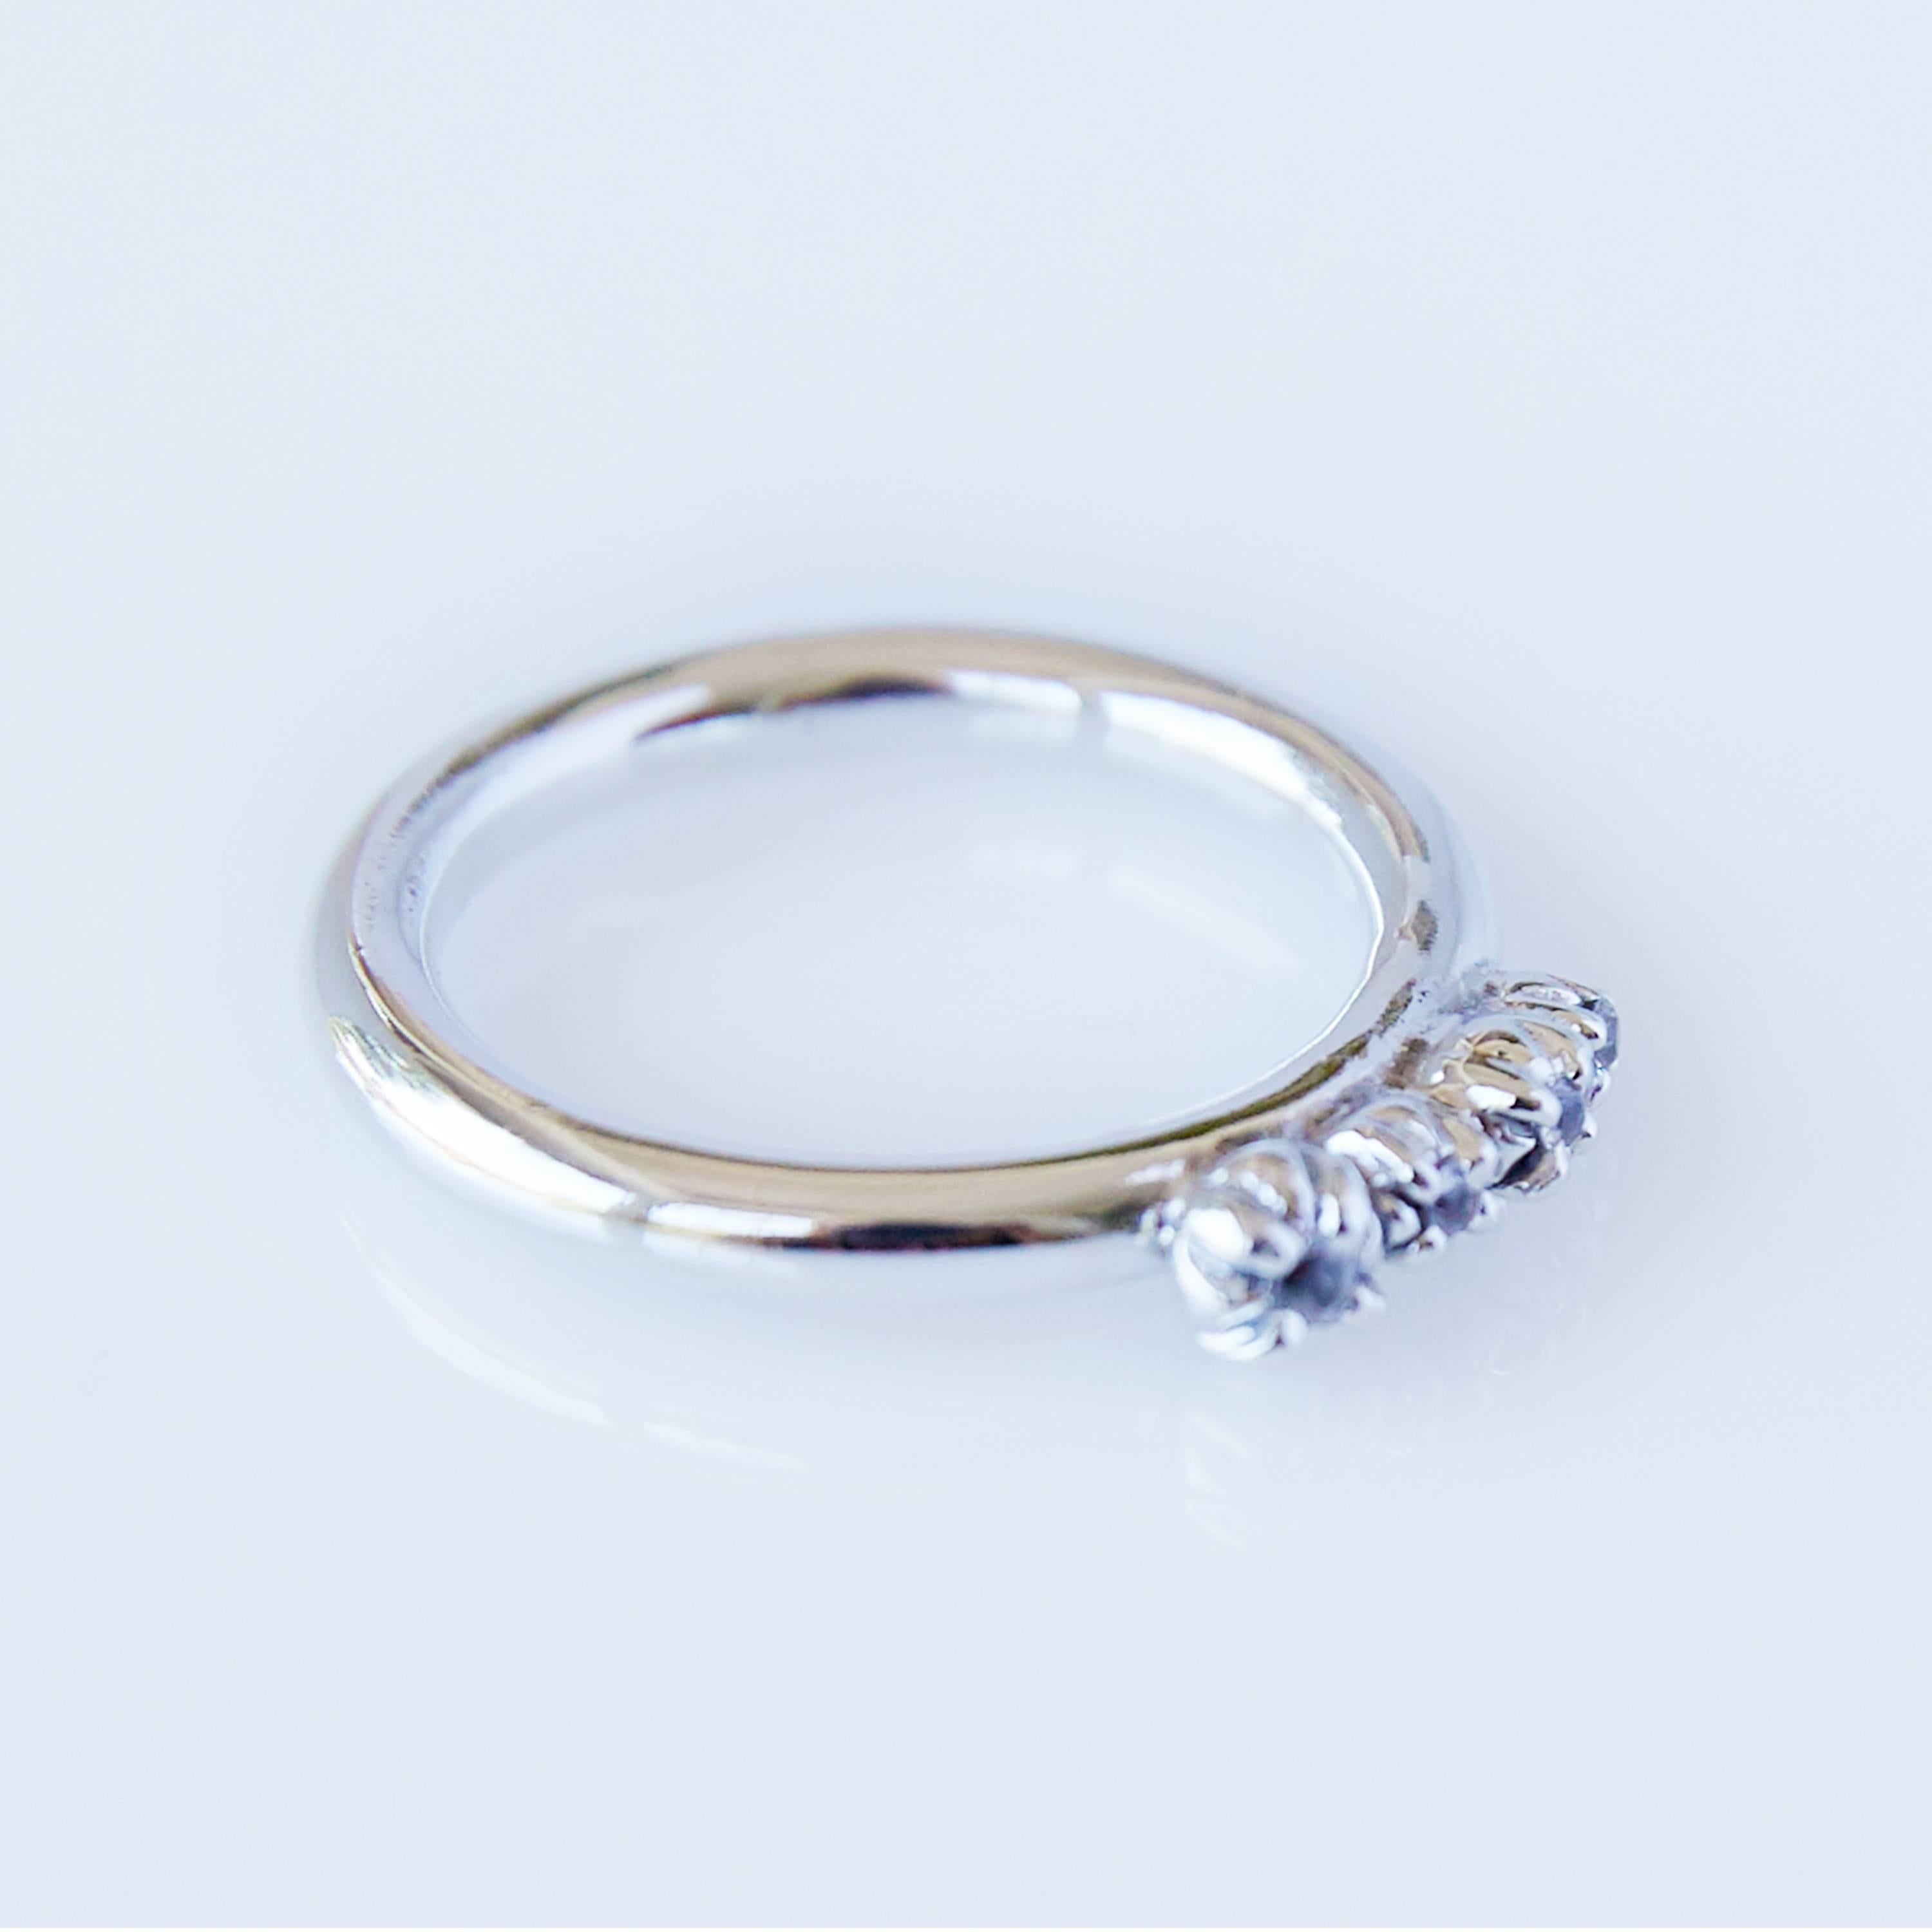 Engagement Ring White Diamond Gold J Dauphin

J DAUPHIN 